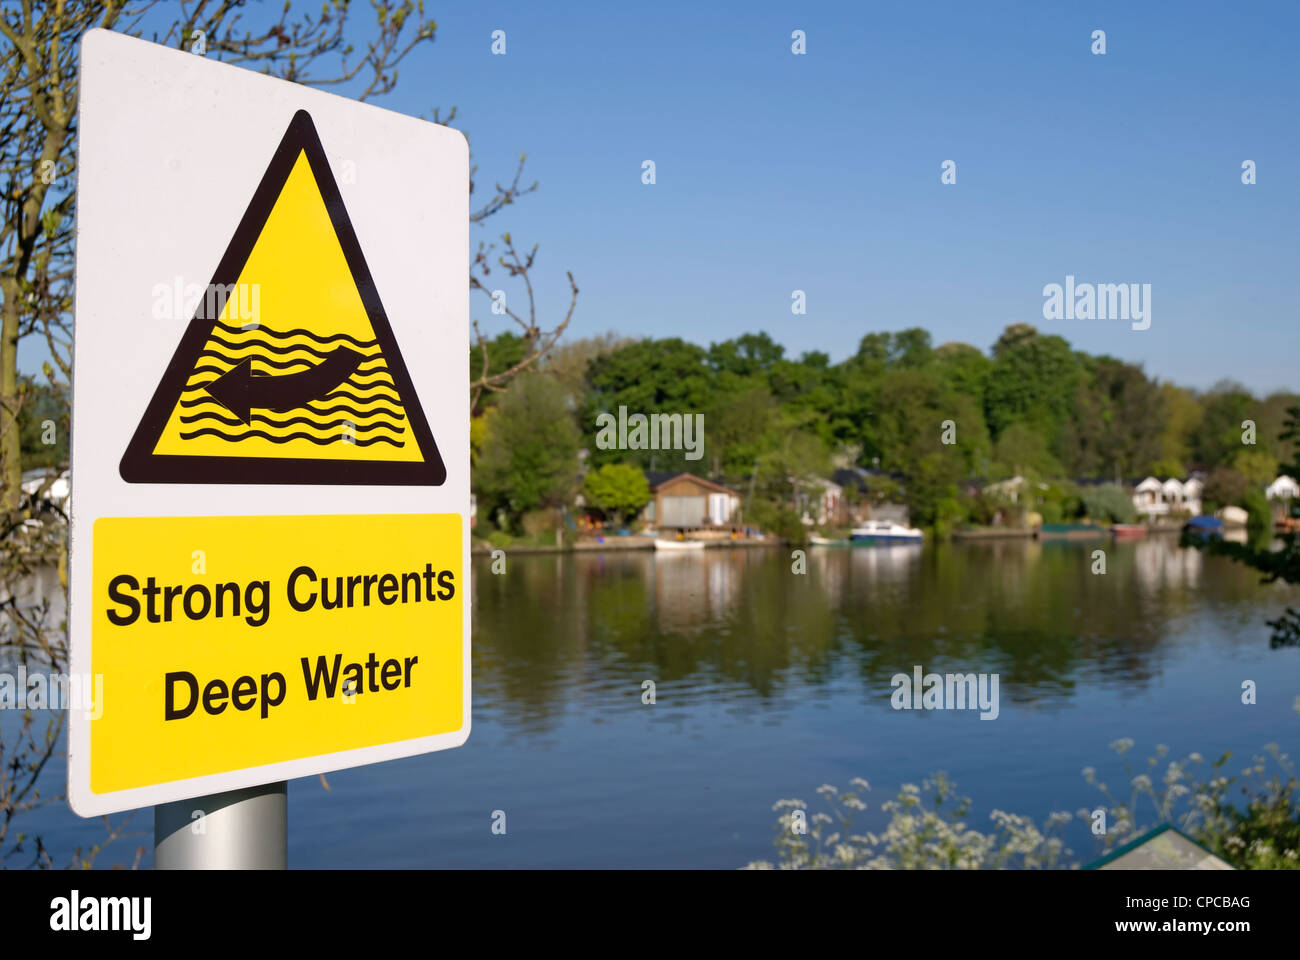 Las fuertes corrientes de agua profunda señal de advertencia por el río Támesis en jamón, Surrey, Inglaterra Foto de stock